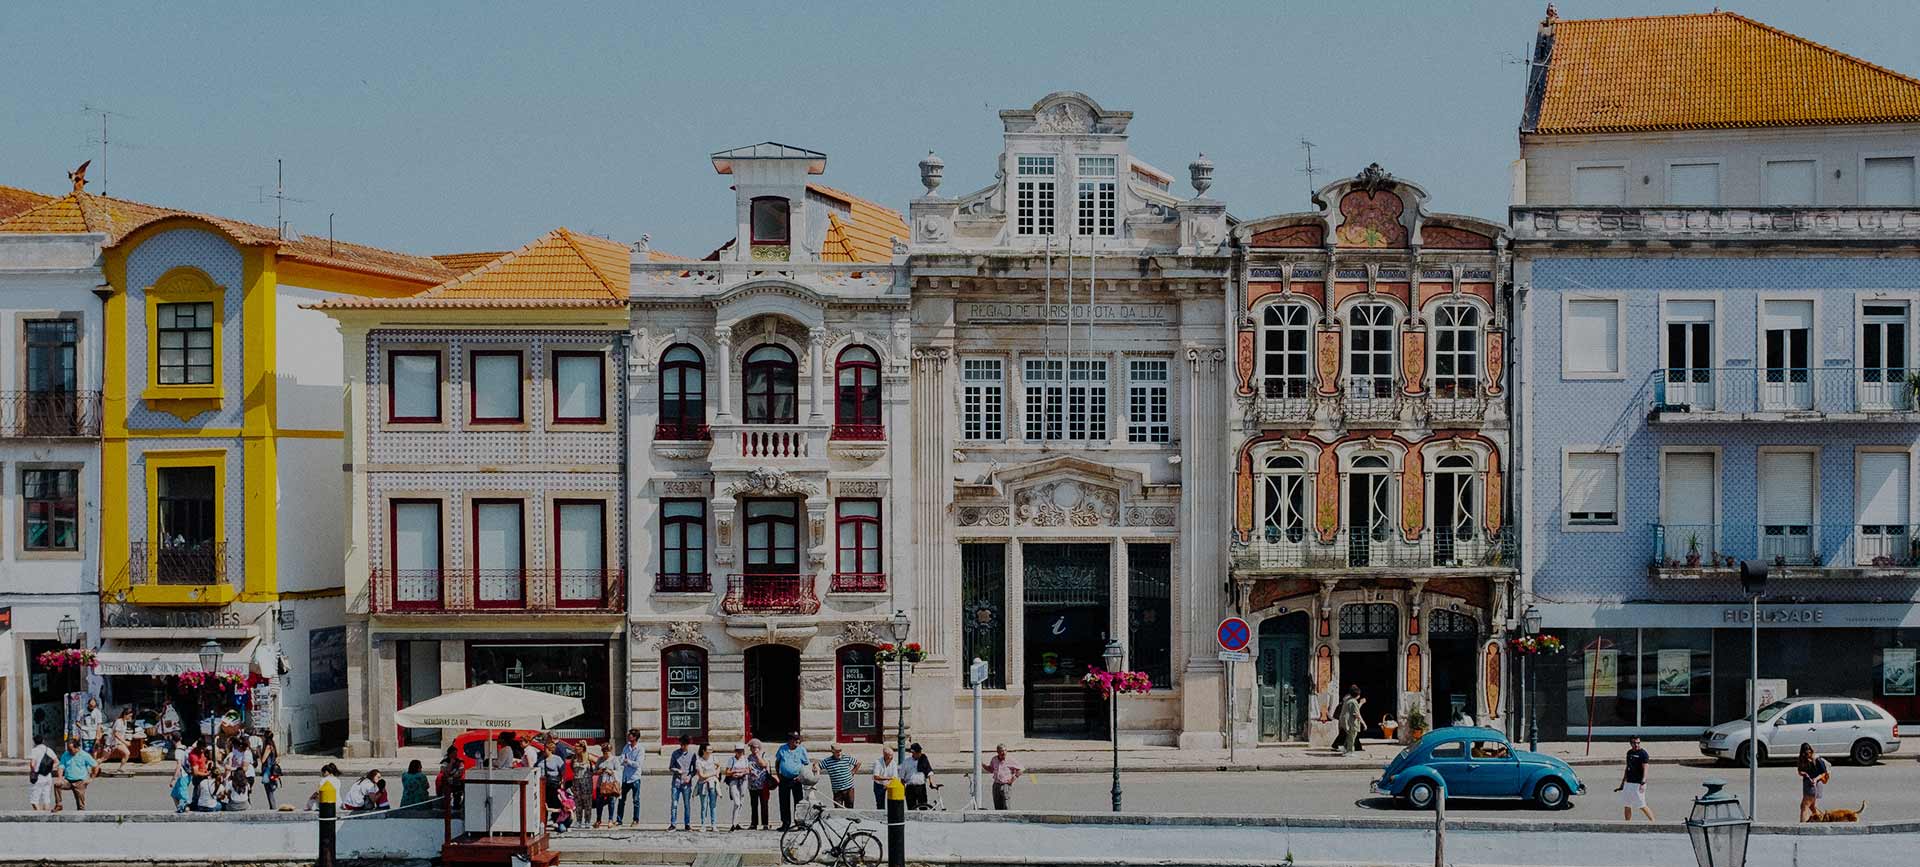 Trabalhar e viver em Lisboa: a história do Mats